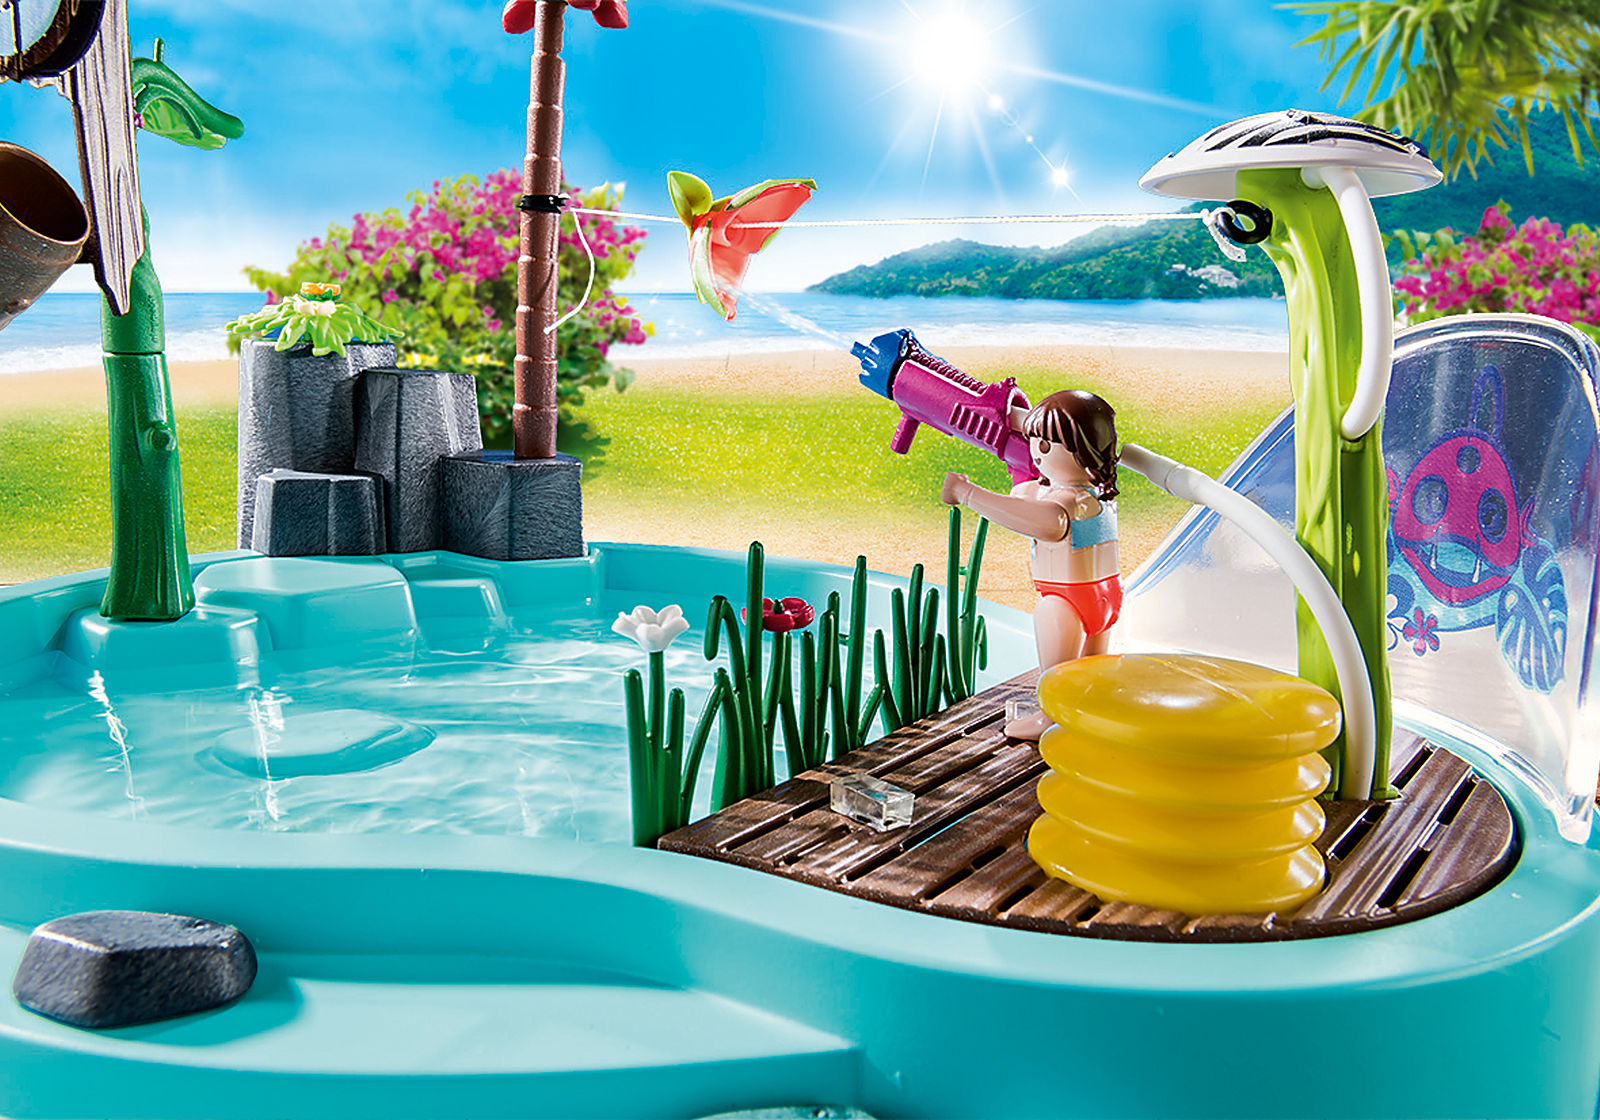 Playmobil Family fun: Piscina Divertida Con Rociador De Agua 70610